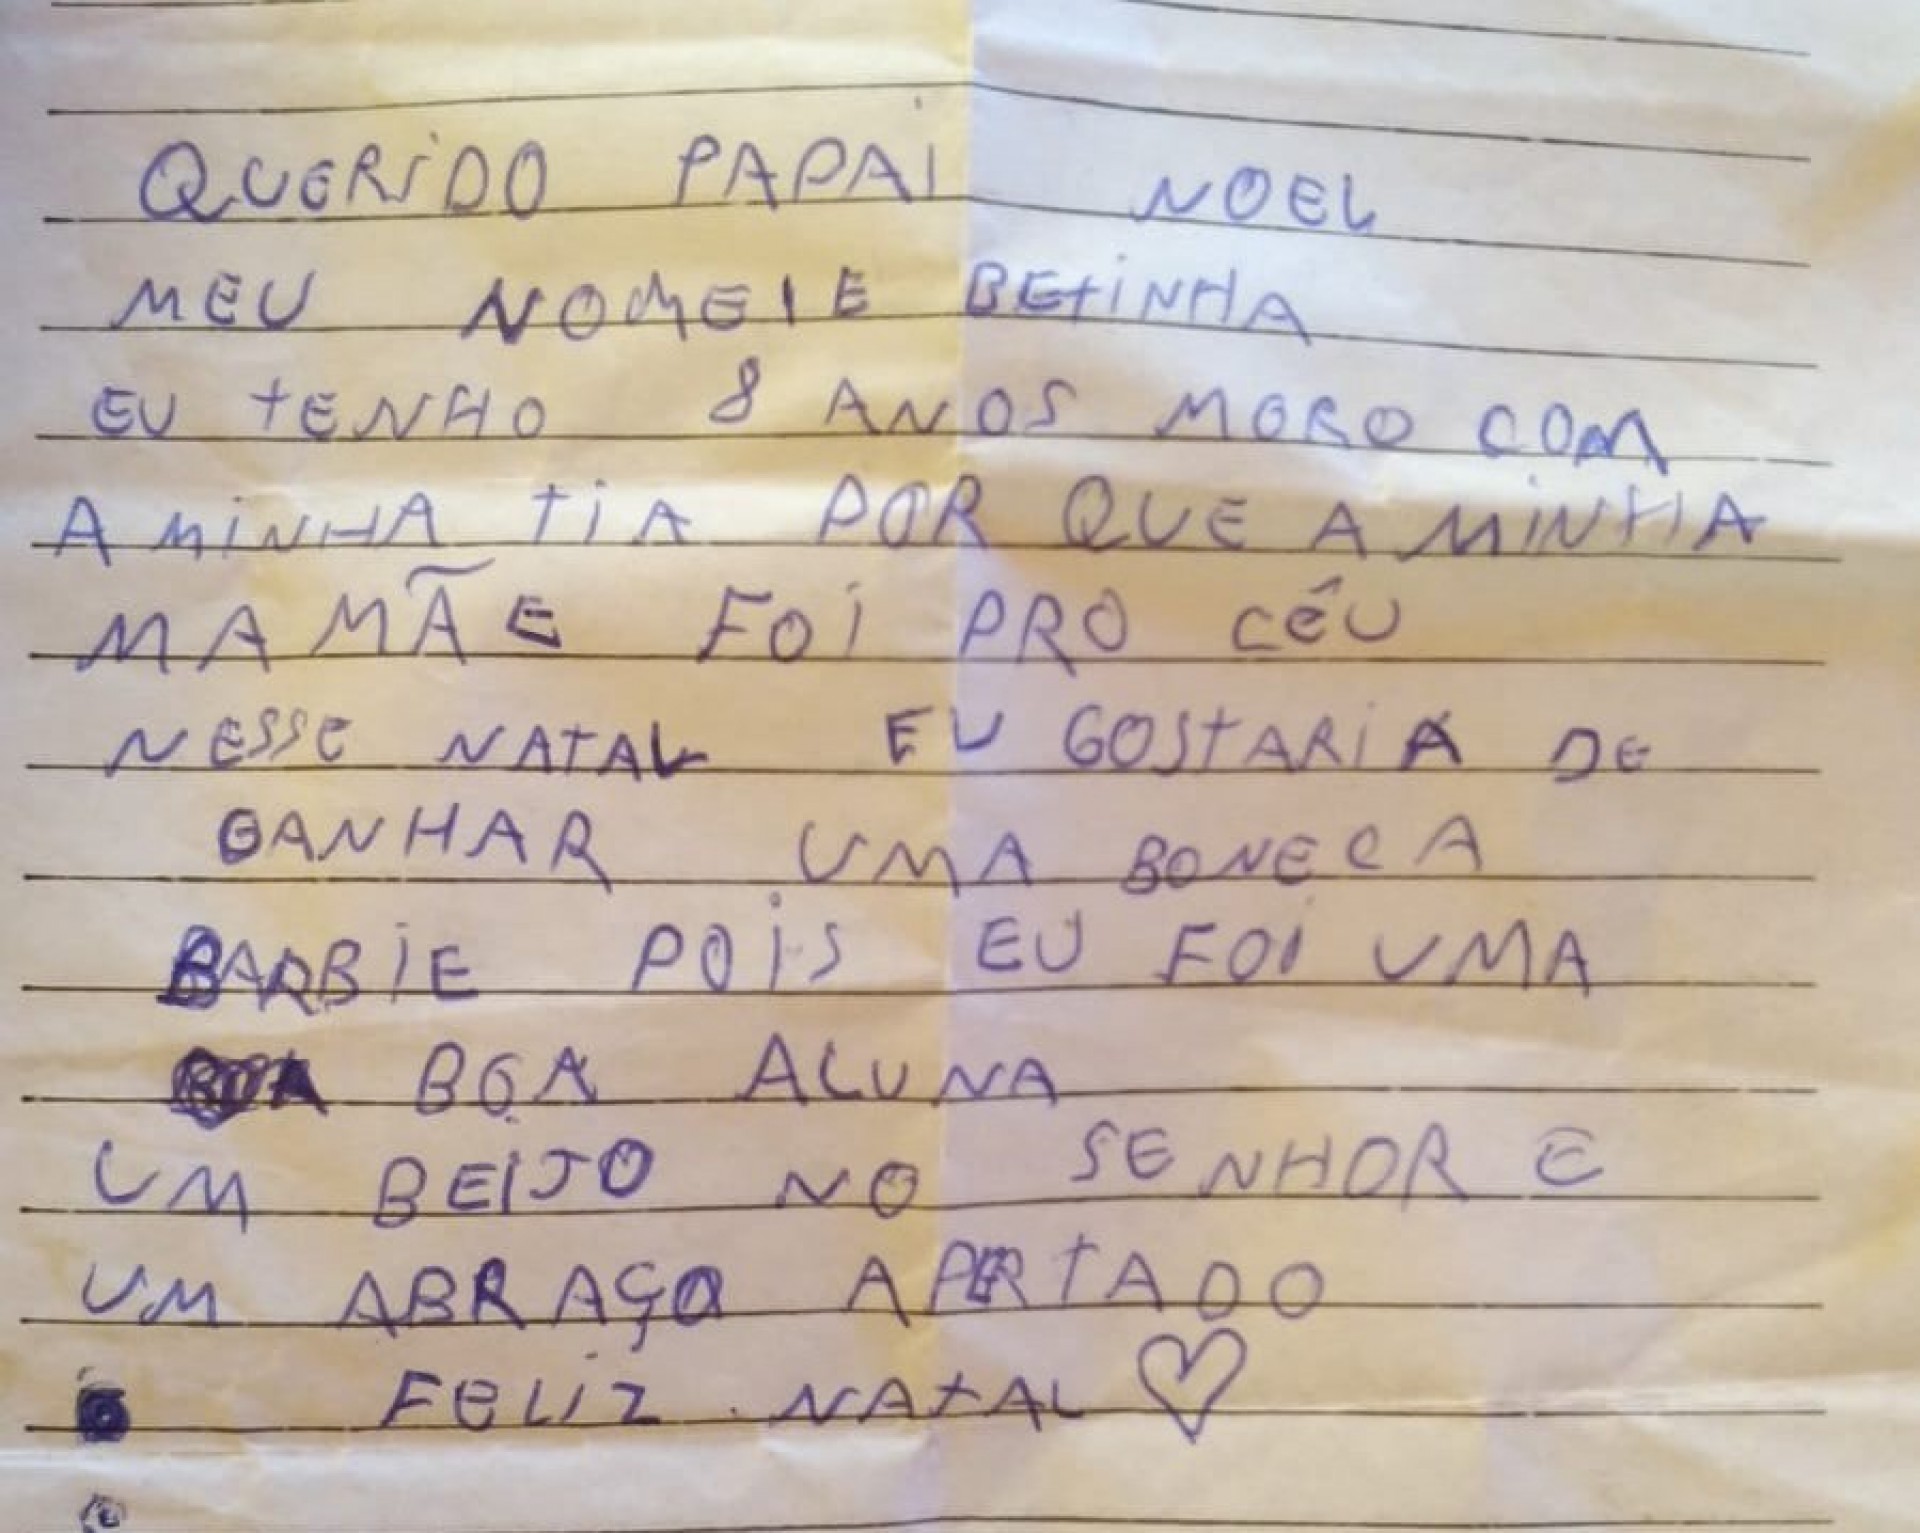 Planejando entregar a carta para o Papai Noel em um passeio da escola, a menina, moradora do município de Aquiraz, no Ceará, acabou perdendo-a poucos minutos antes